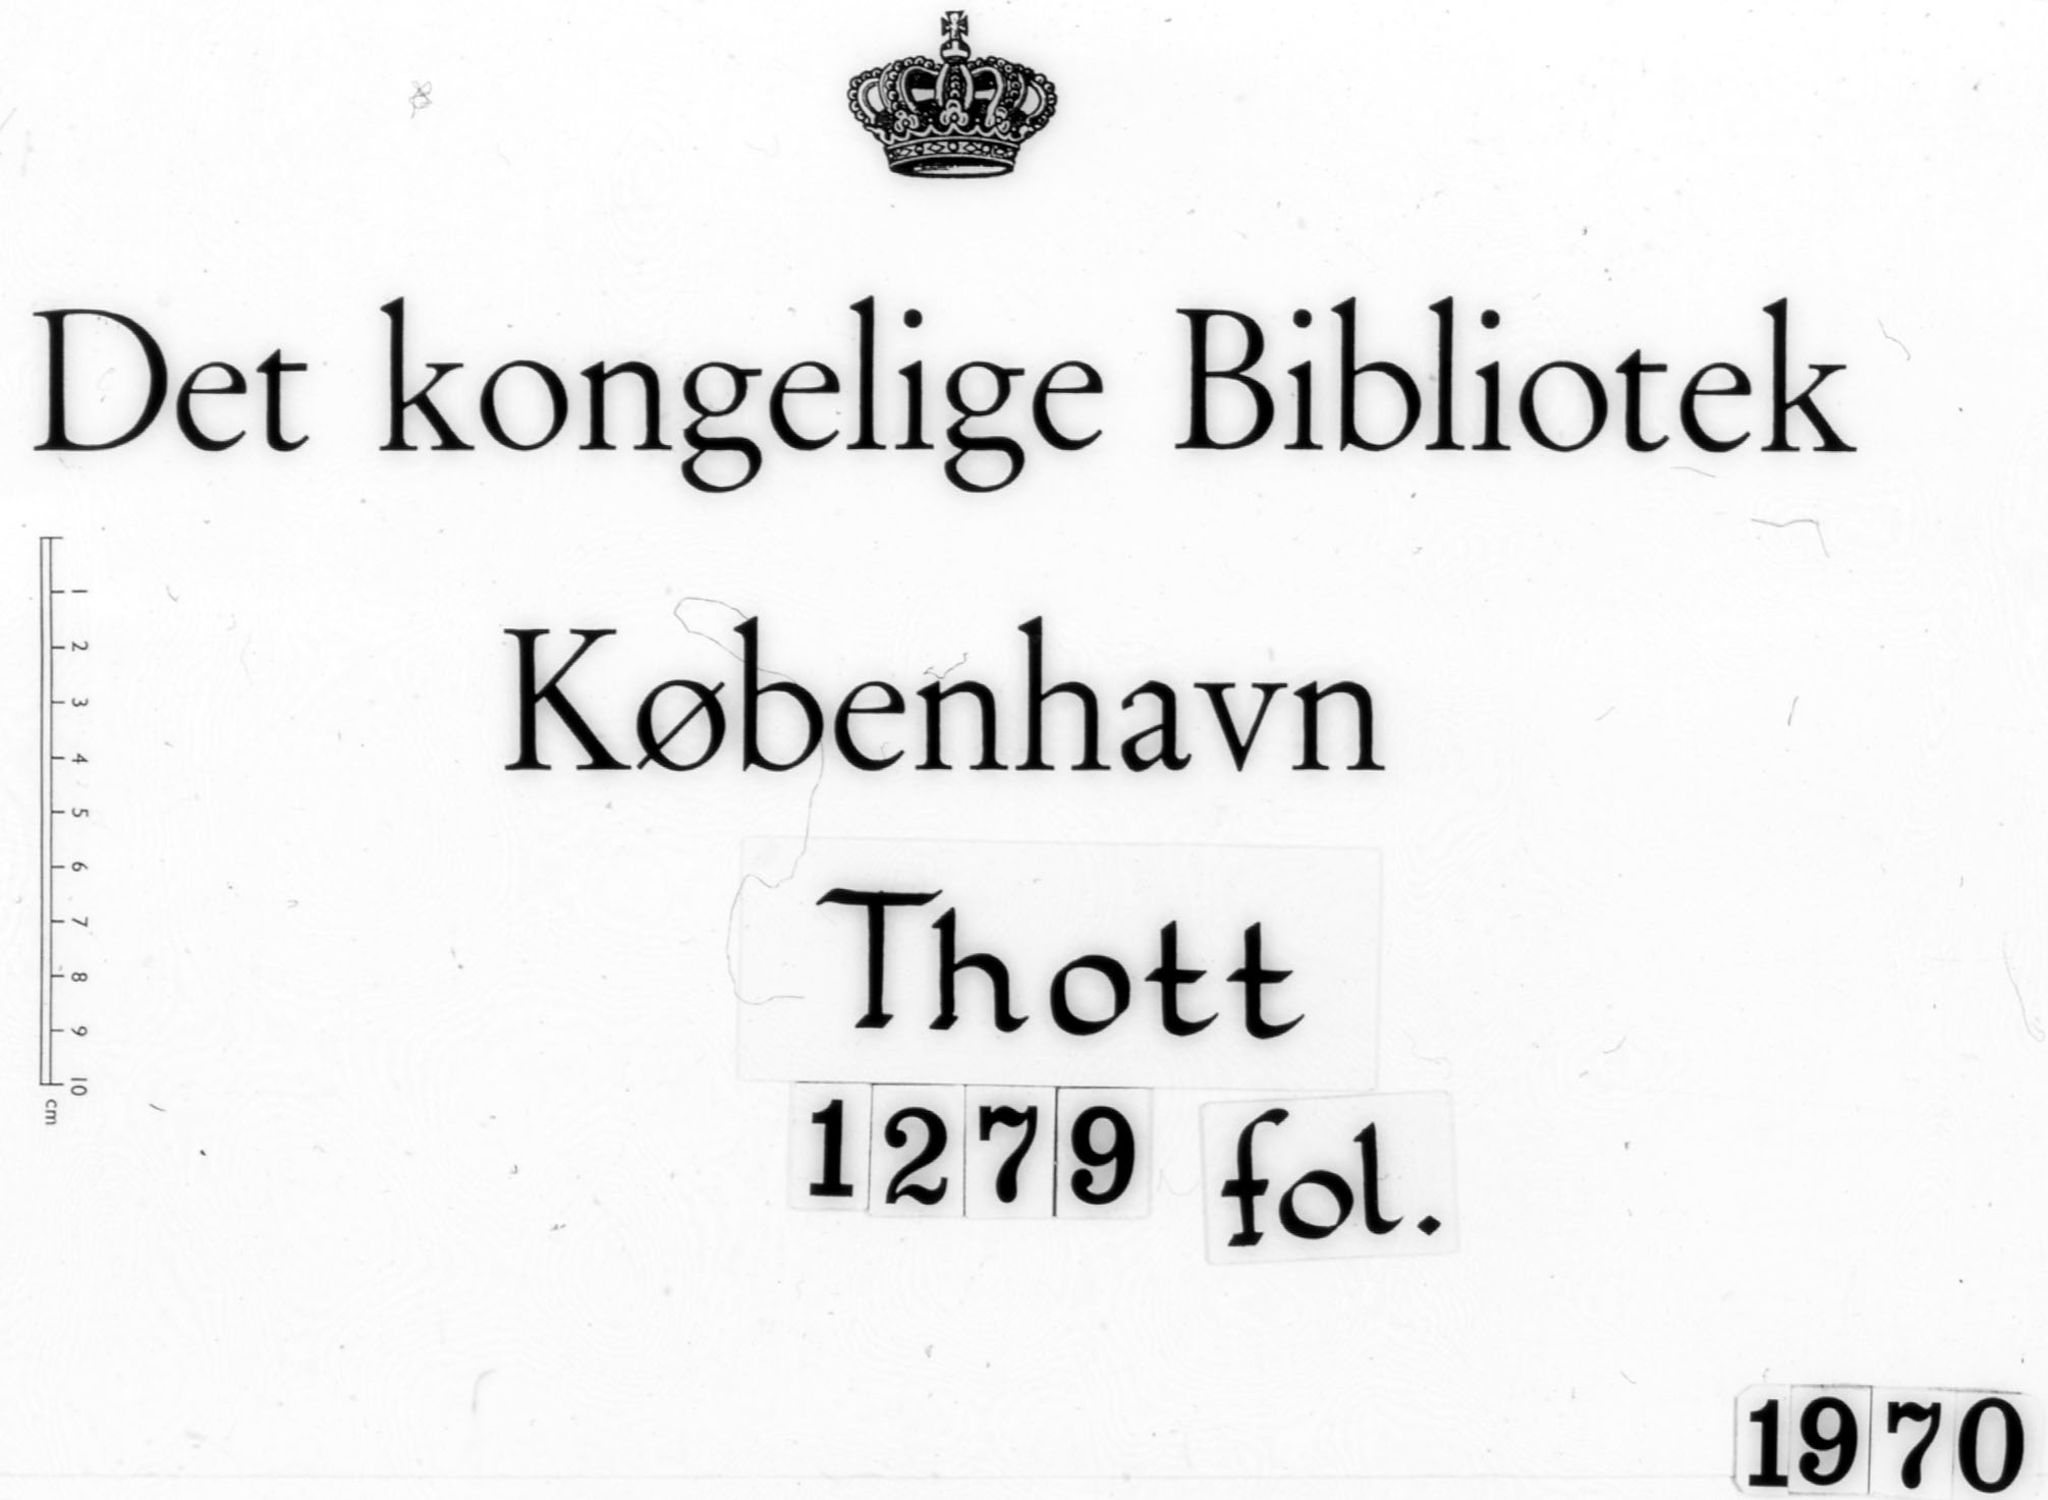 Thottske Samling, KB/-/1279 folio: En Dombog med adskillige norske Domme fra det XVI Sec., Bergens Sager især angaaende, 1580-1601